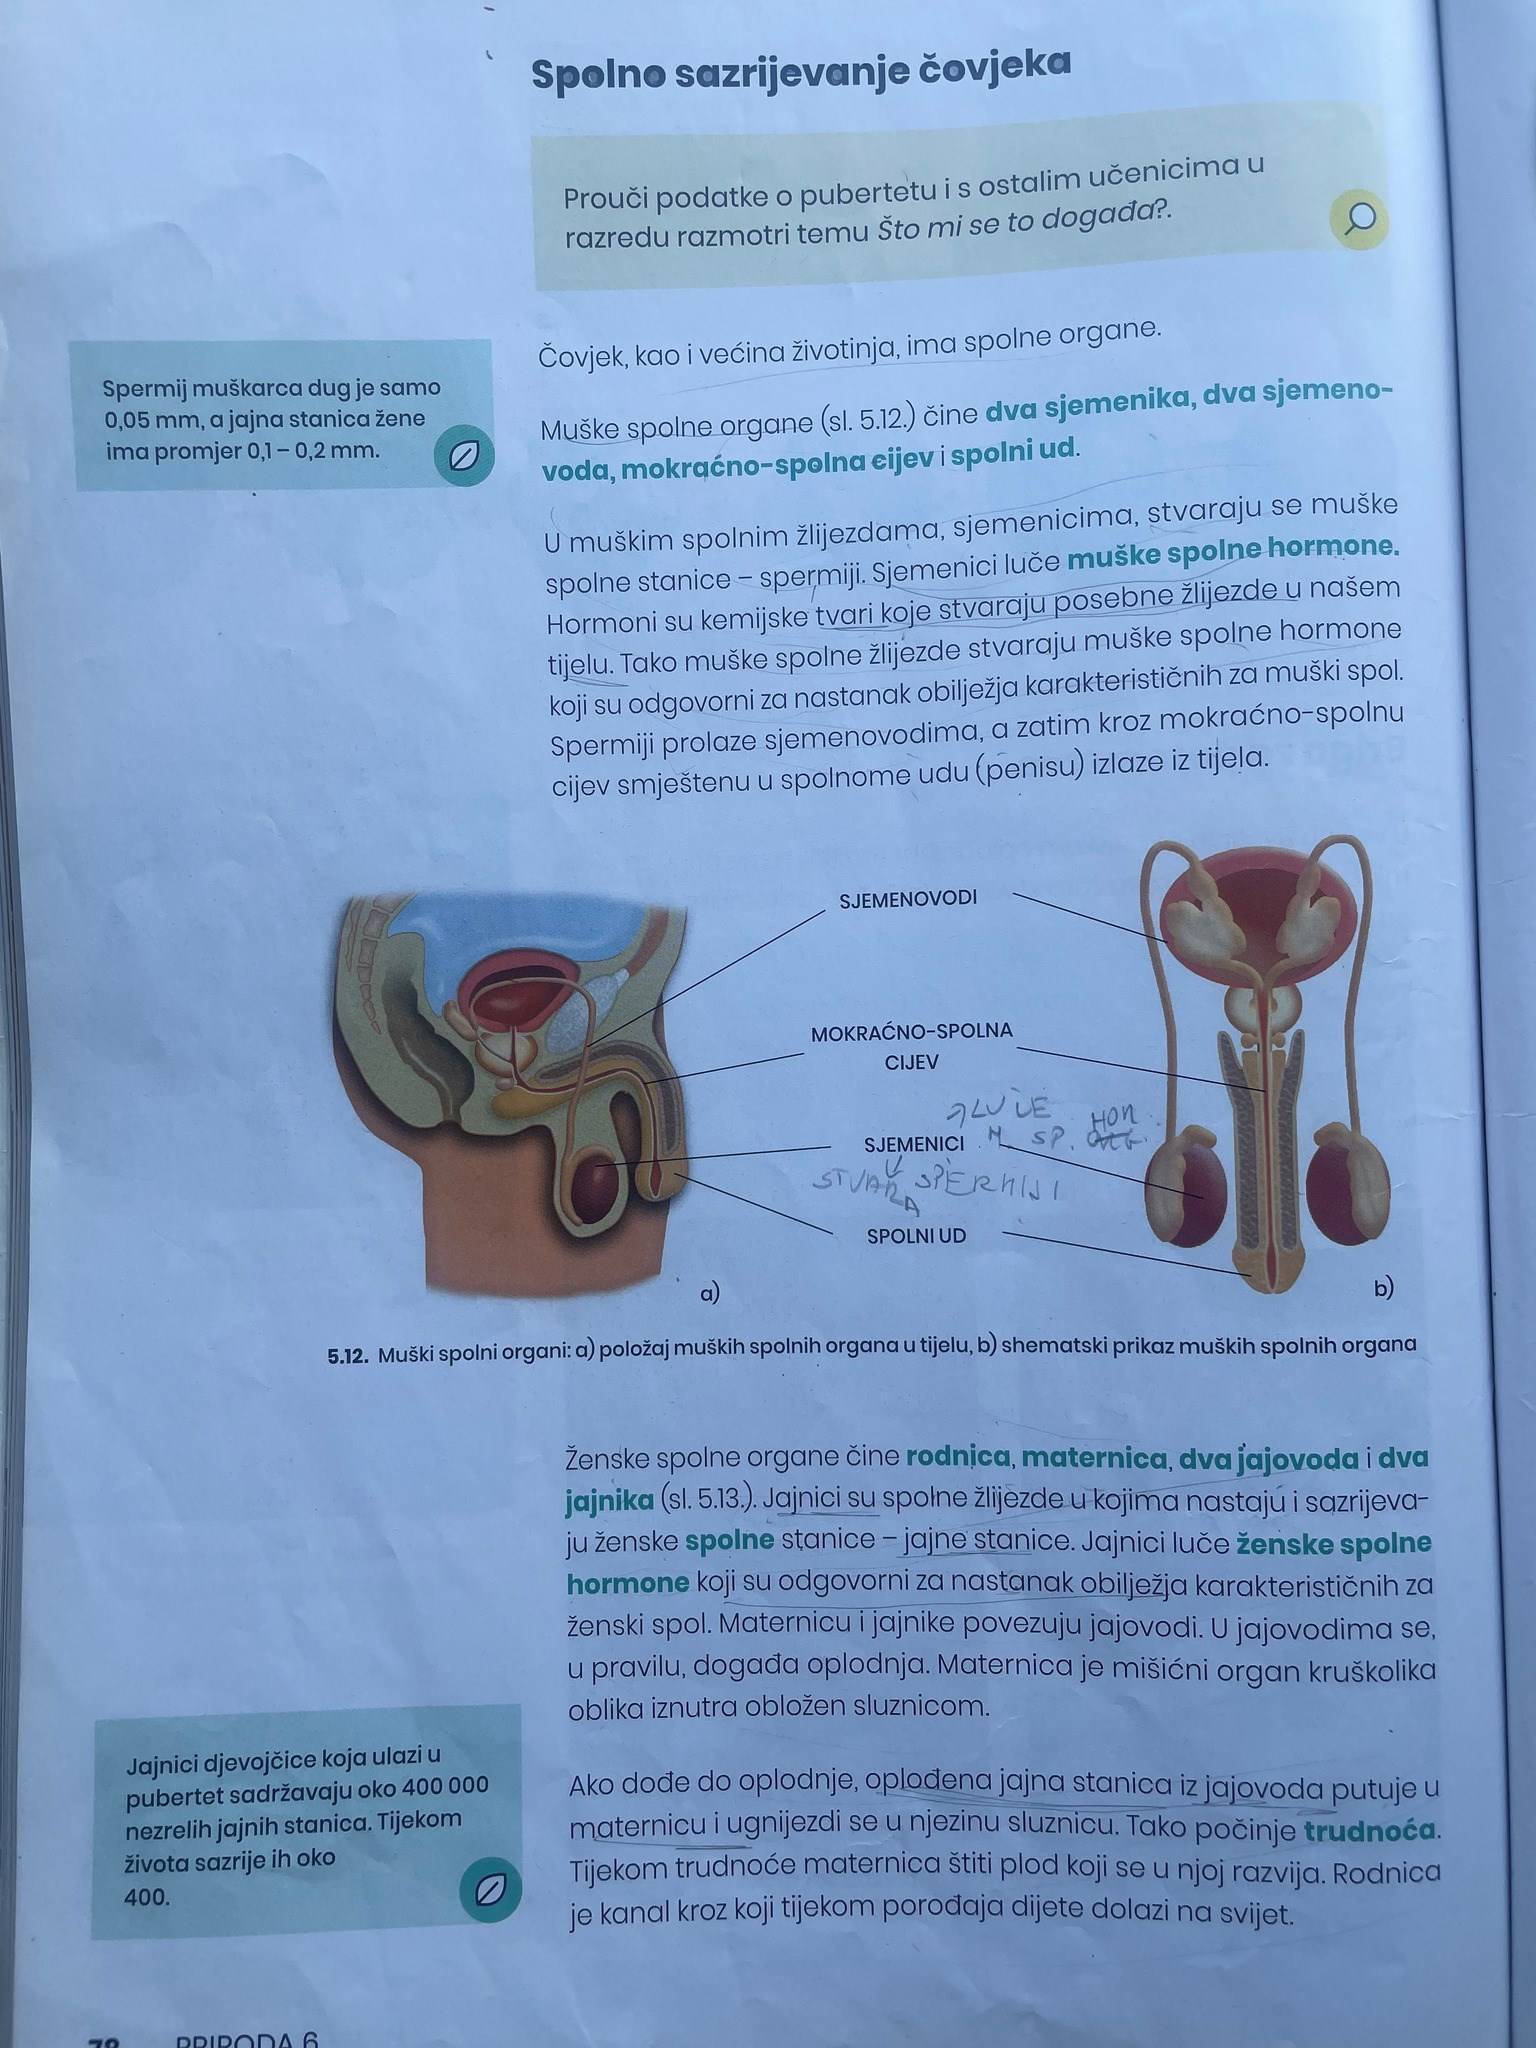 Ovo je udžbenik za 6. razred, pogledajte kako su prikazali muški, a kako ženski organ!